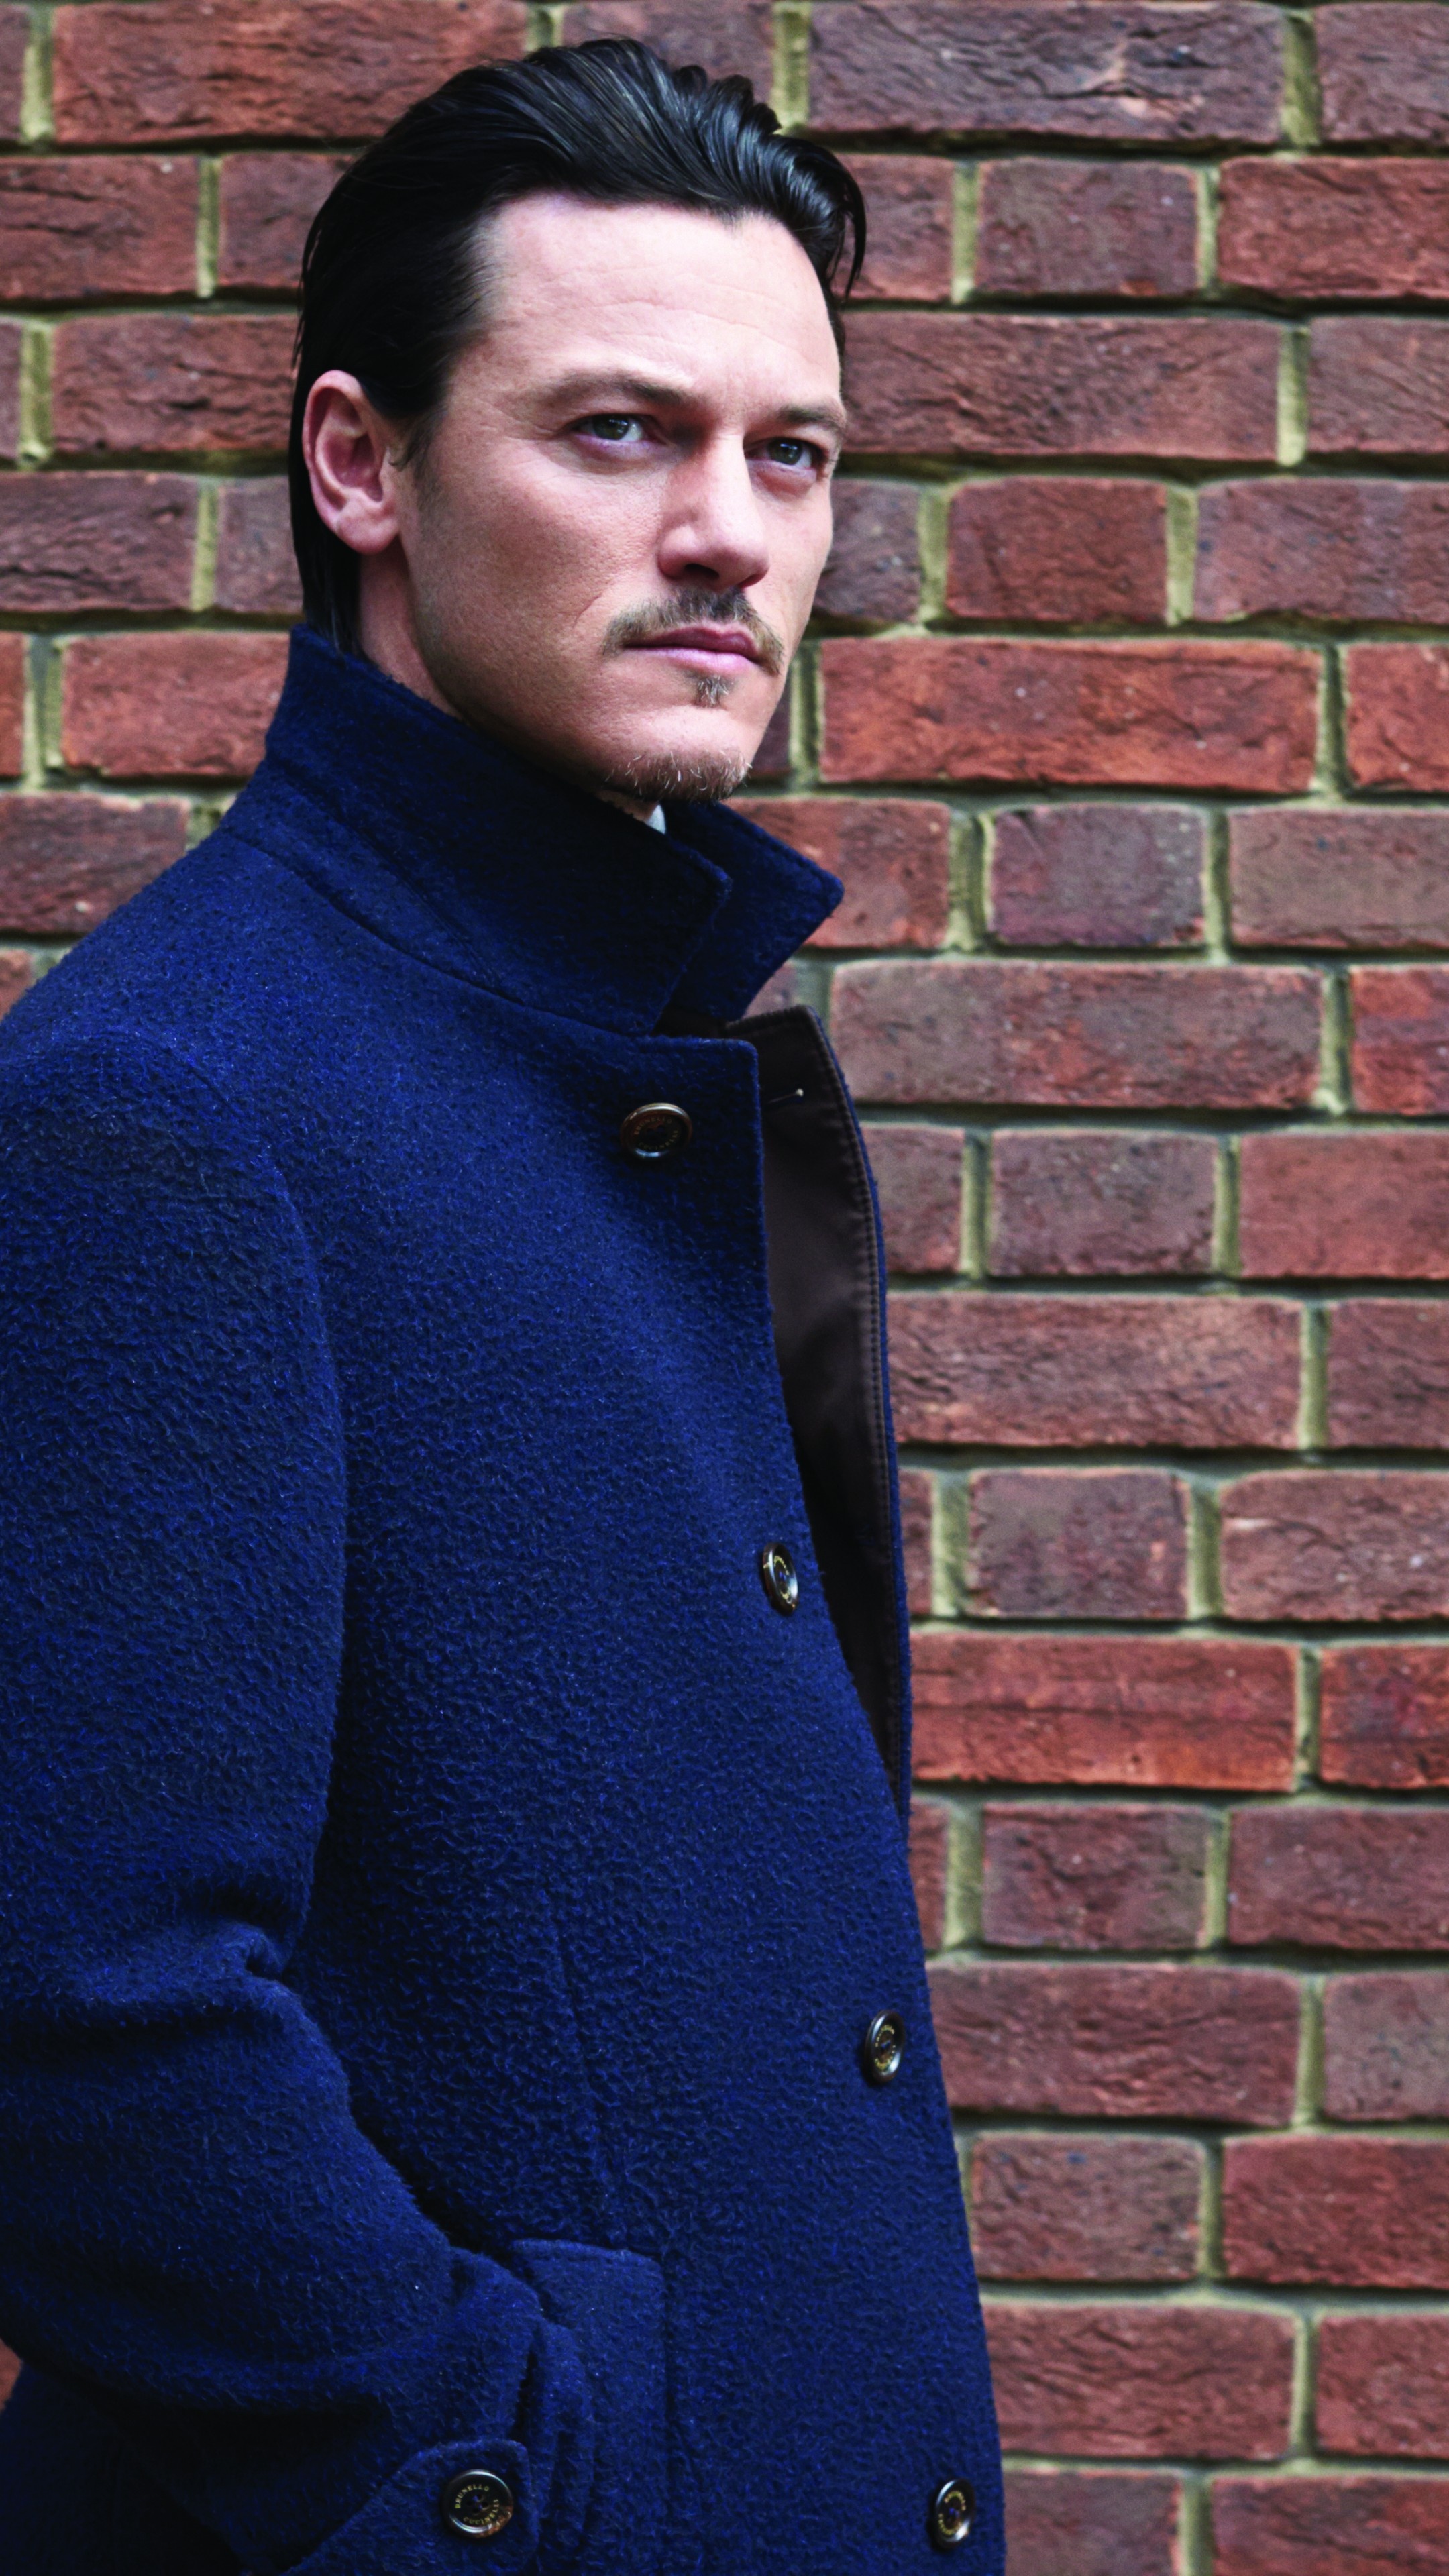 Luke Evans wallpaper, Blue cloak fashion, Brick wall backdrop, Striking celebrity look, 2160x3840 4K Handy